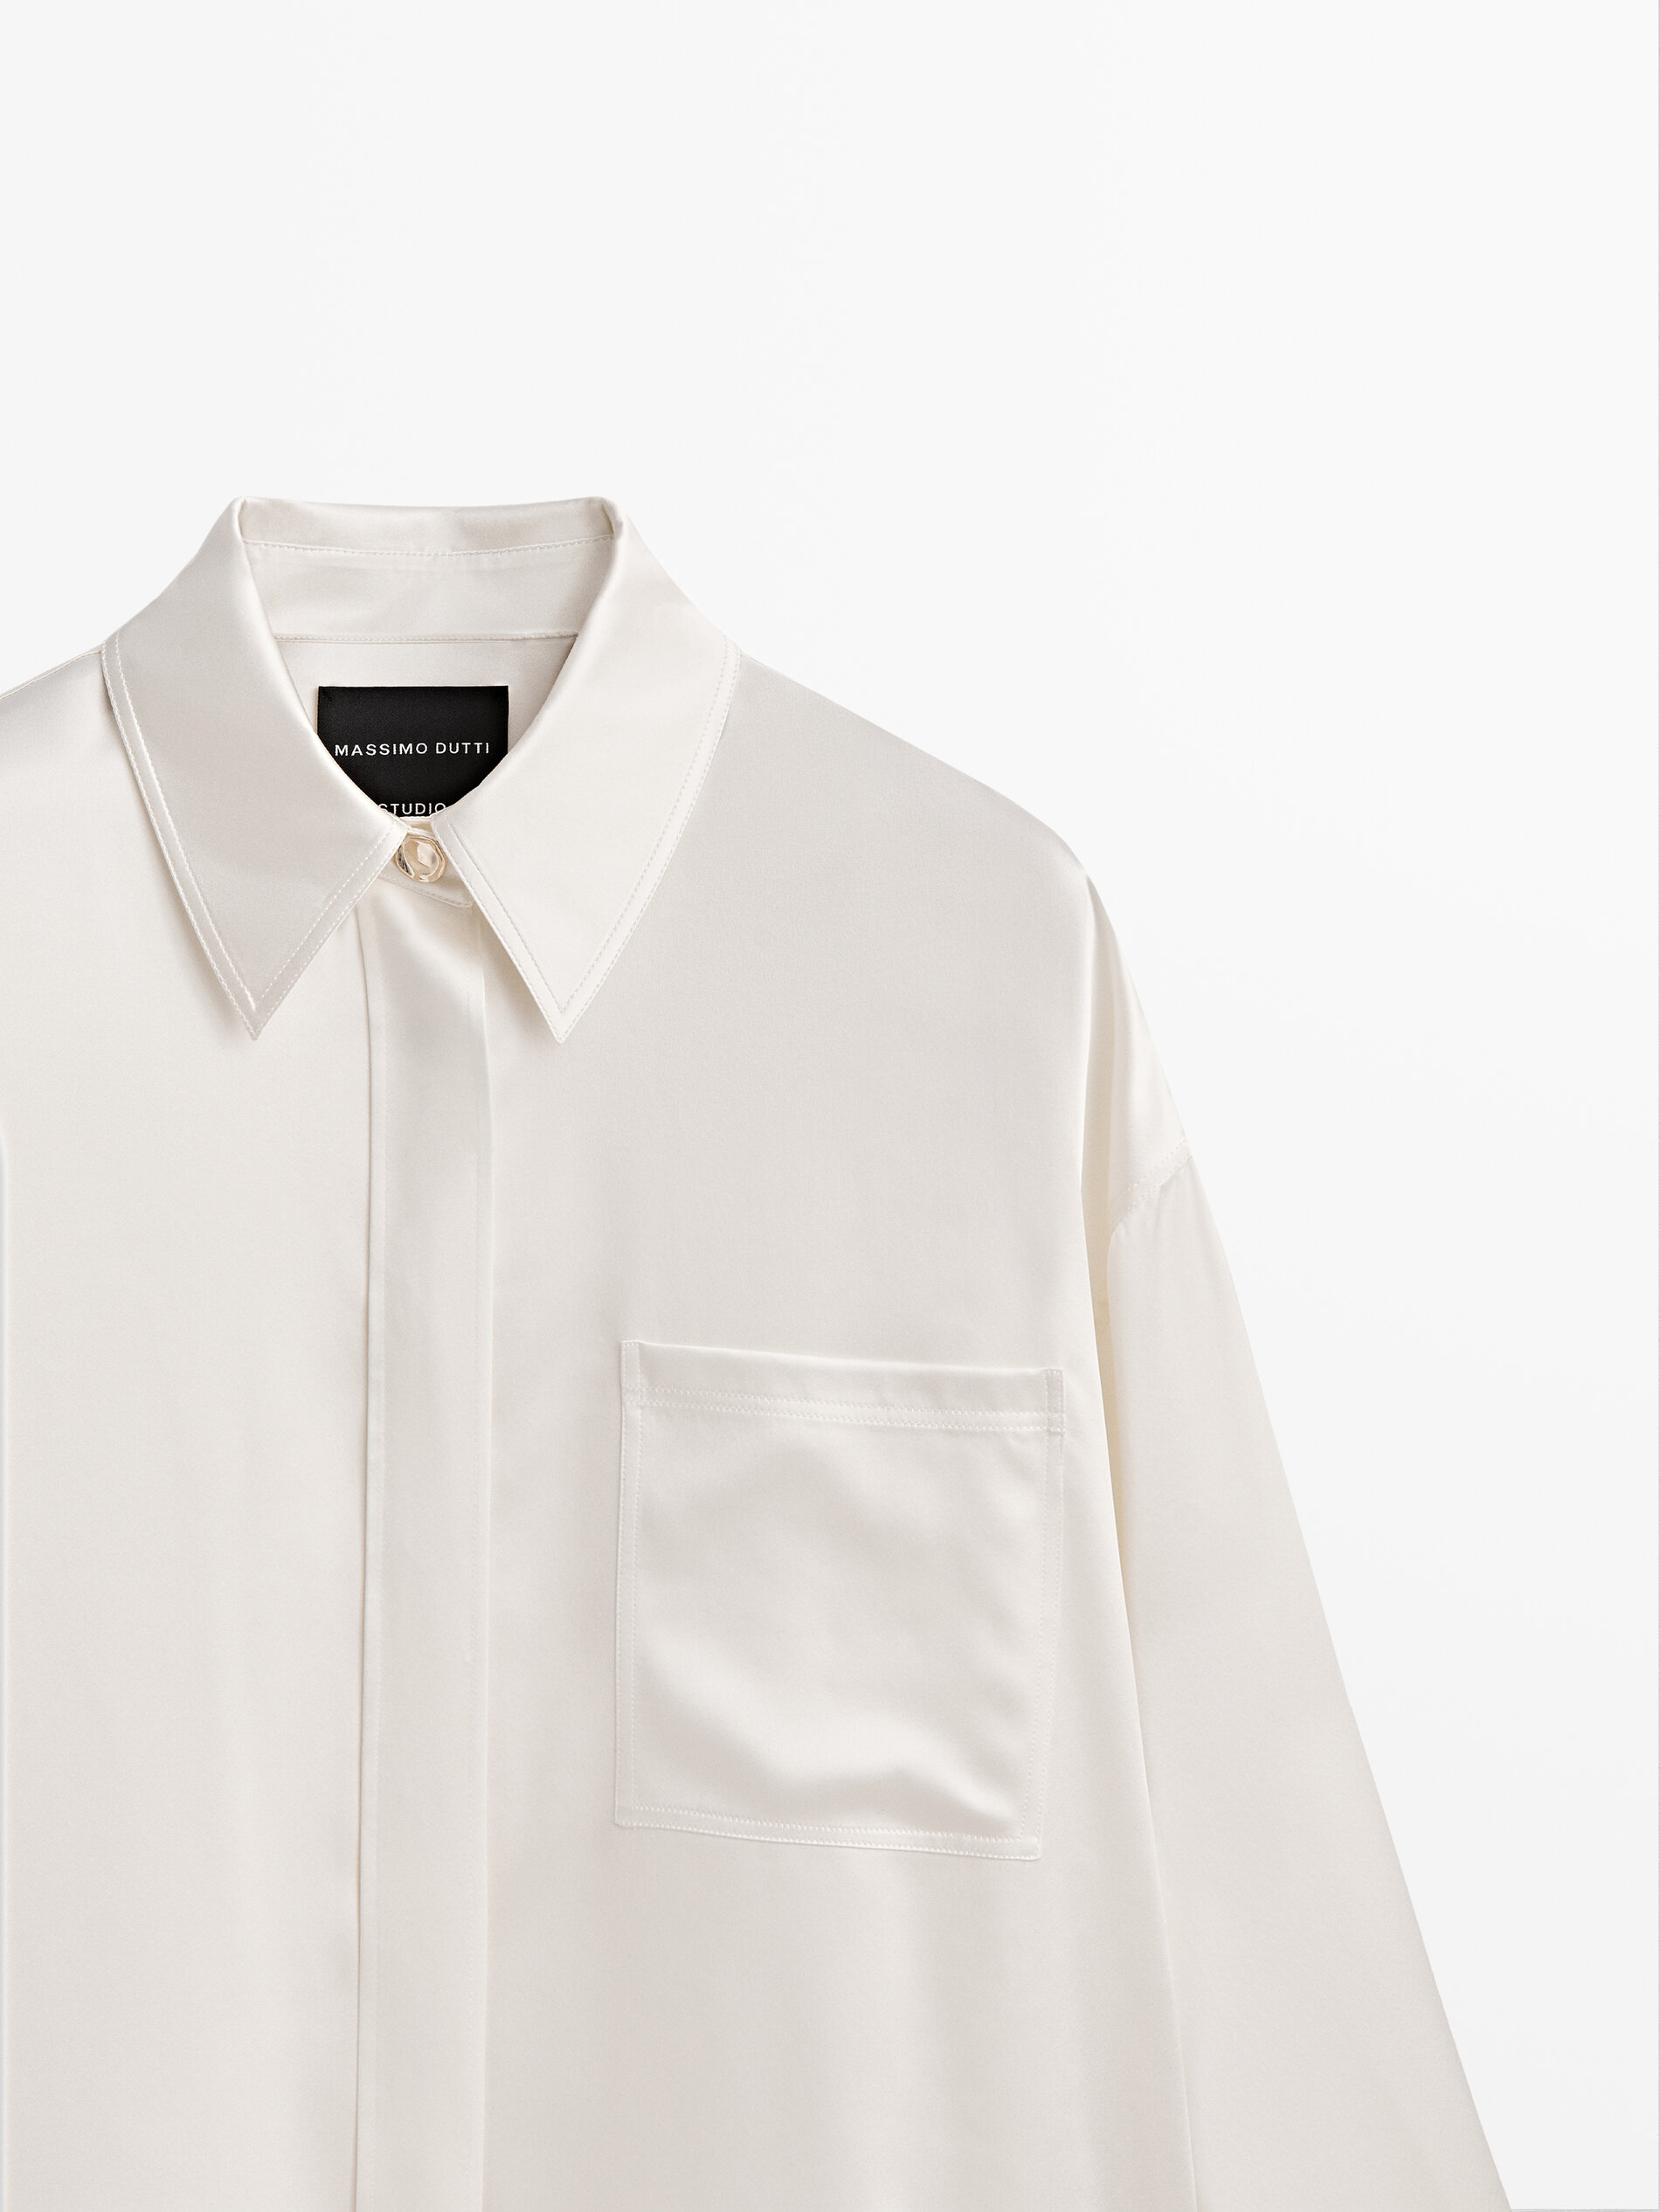 Mode Blouses Zijden blouses Massimo Dutti Zijden blouse wit-lichtgrijs gestreept patroon elegant 